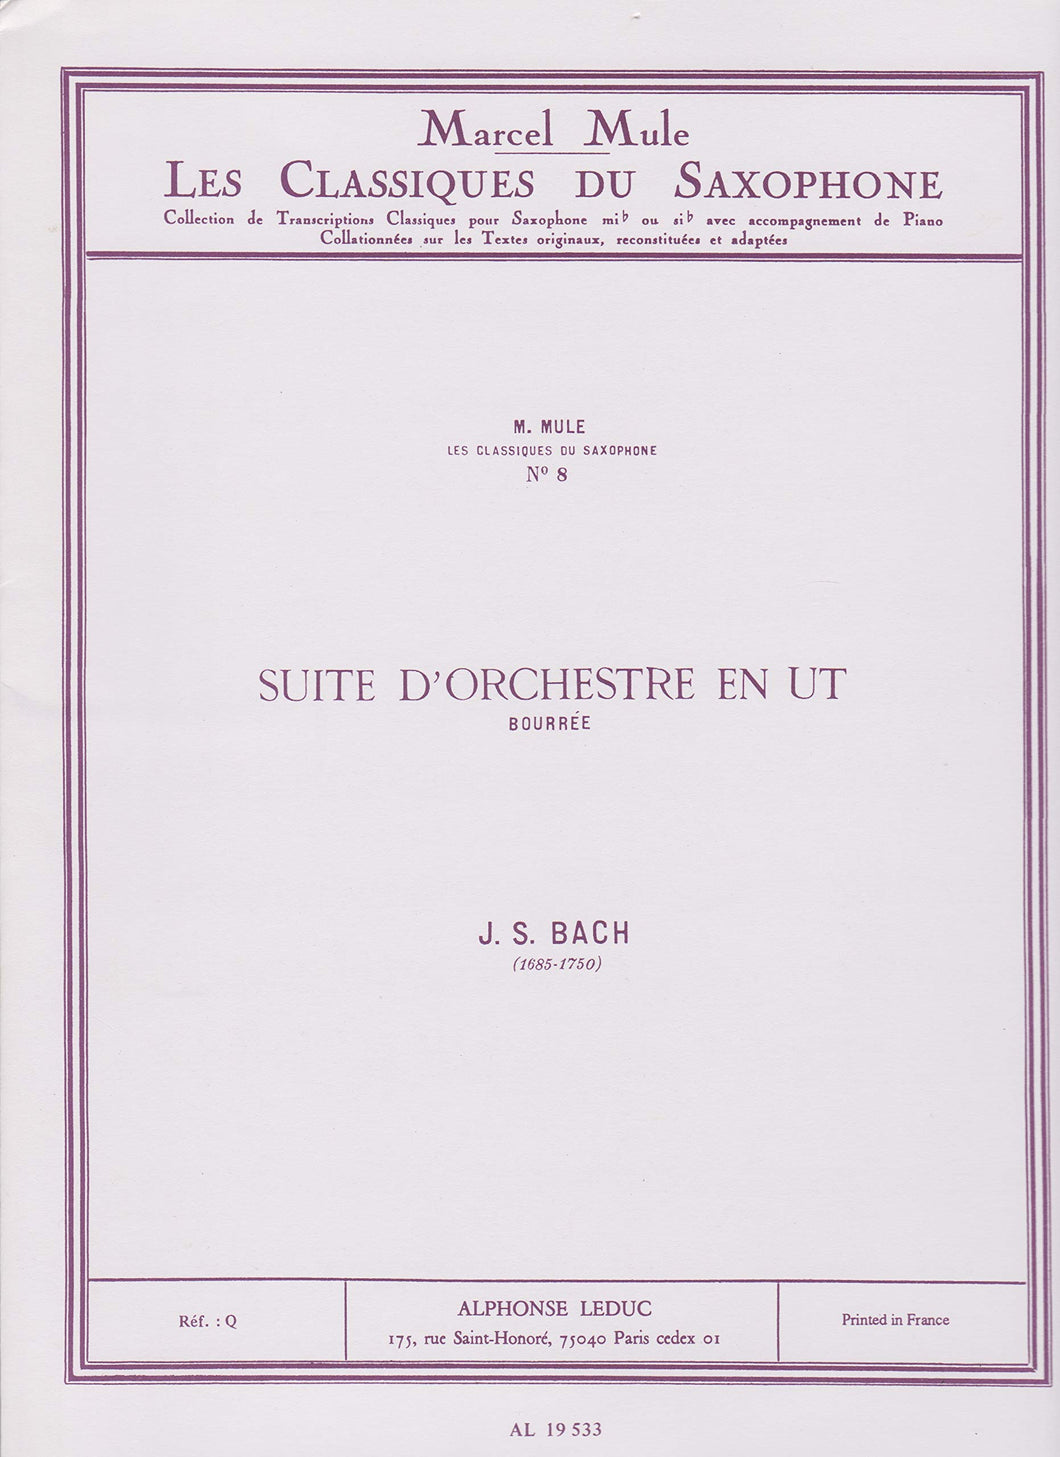 Classique Saxophone Si B No.71 Suite D'Orchestre En Ut: Bouree by Johann Sebastian Bach, Arranged by Marcel Mule